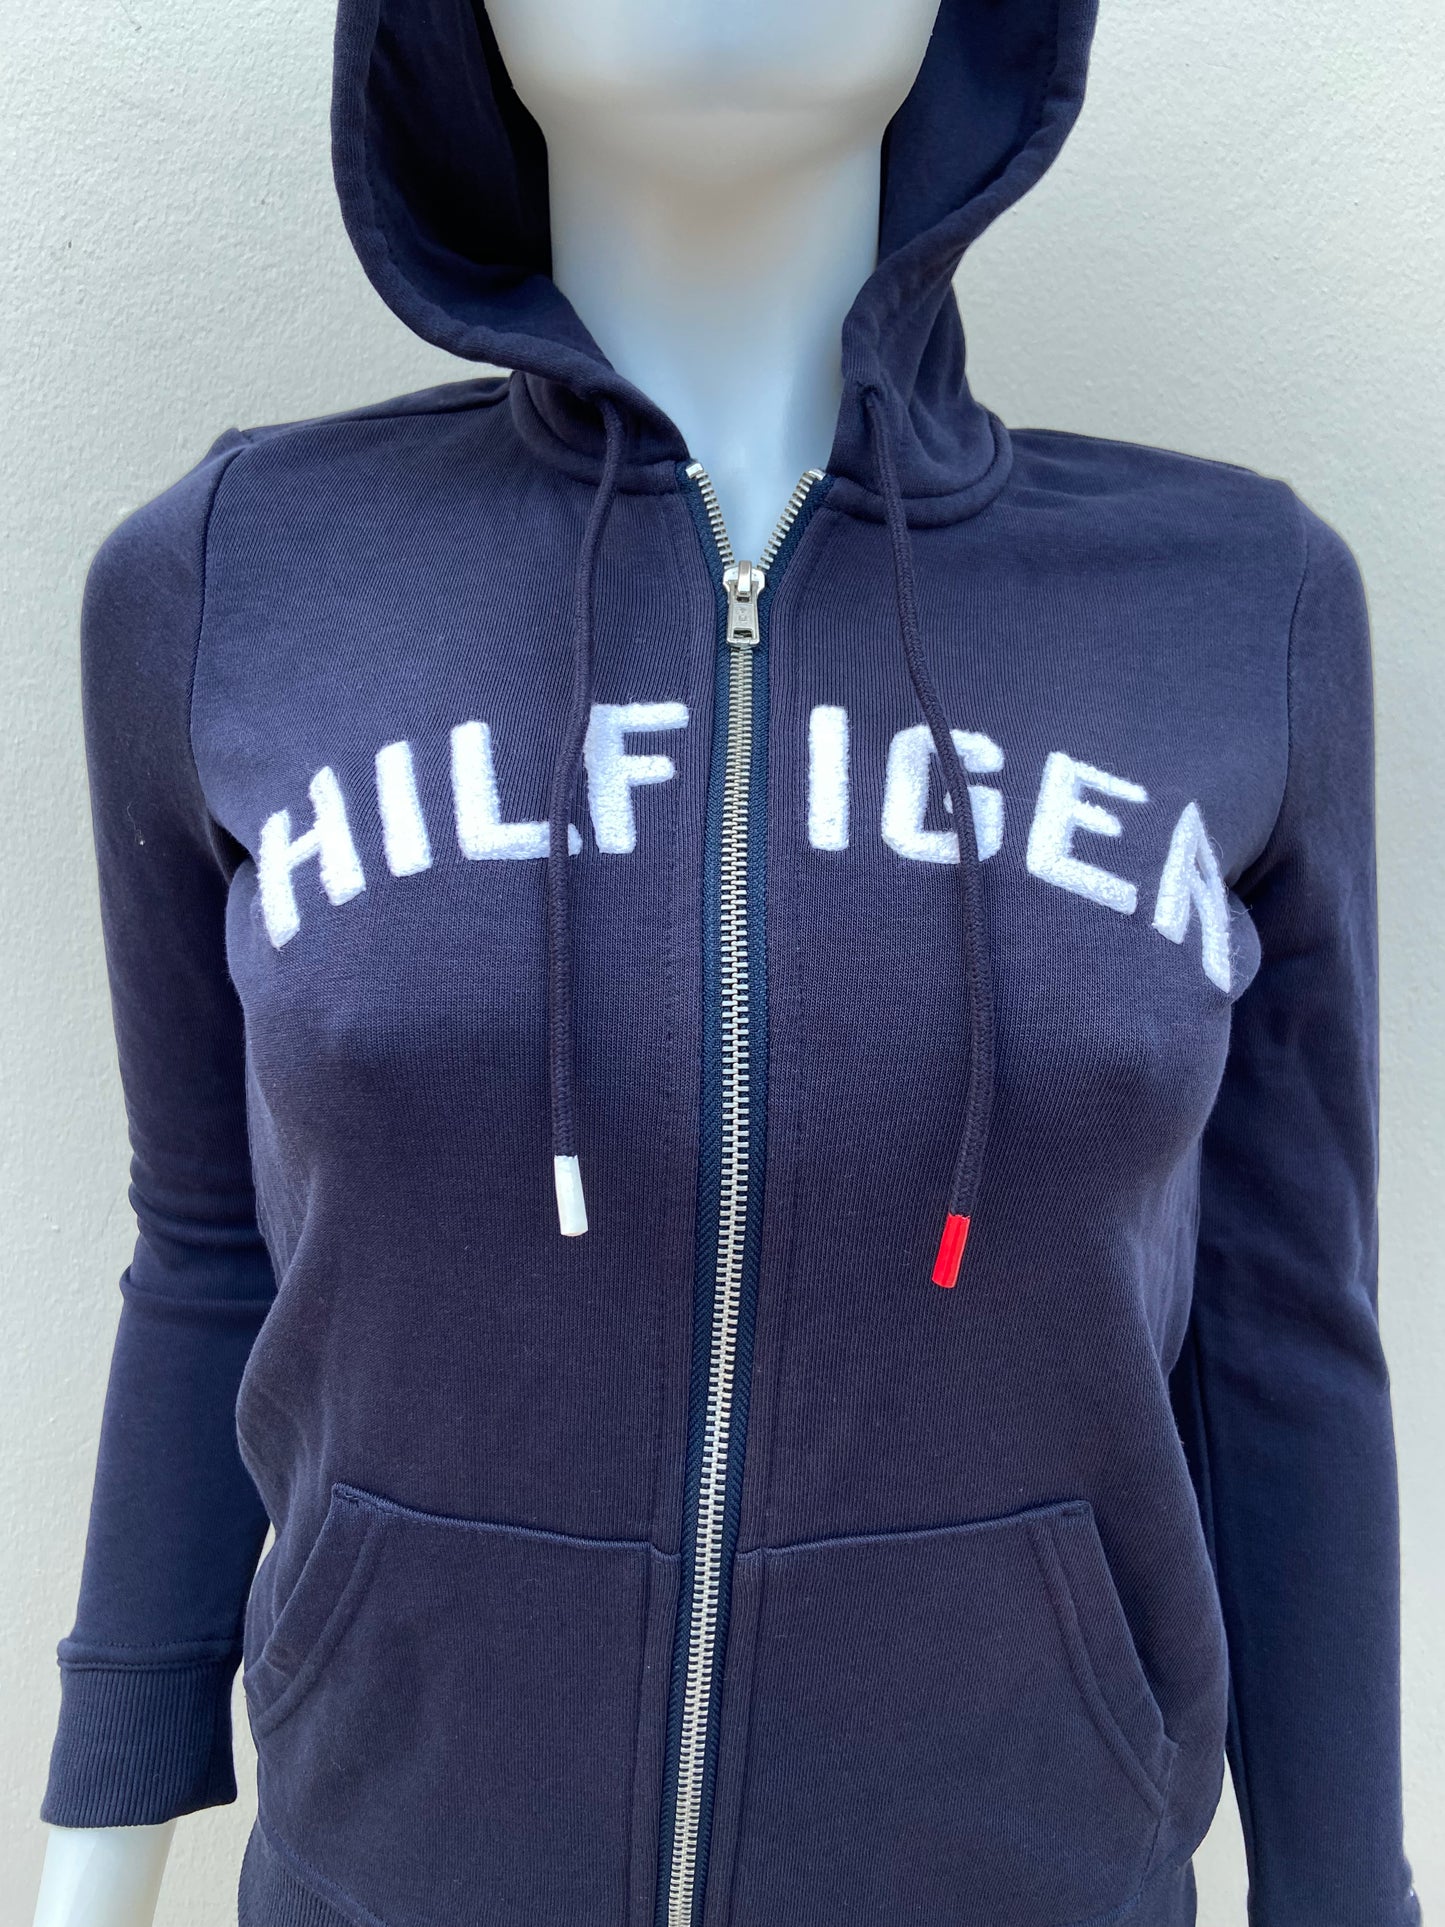 Abrigo Tommy Hilfiger original azul marino con zíper y letras HILFIGER en blanco.